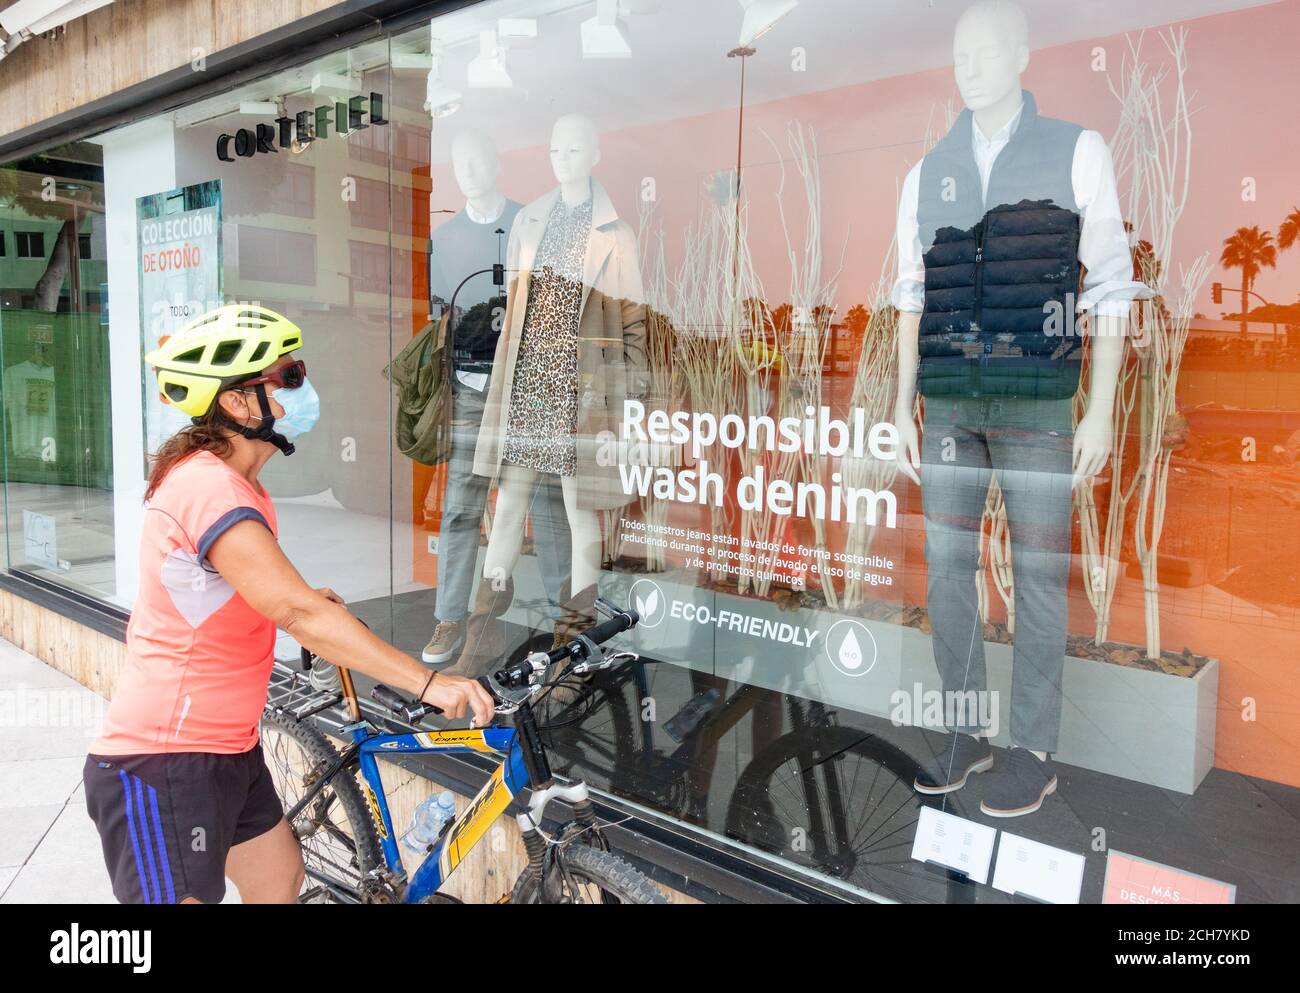 Una ciclista femenina con de cara mirando en la ventana la tienda con una pegatina de lavado responsable en la ventana. Tiendas en ventana, ropa ecológica Fotografía de stock -